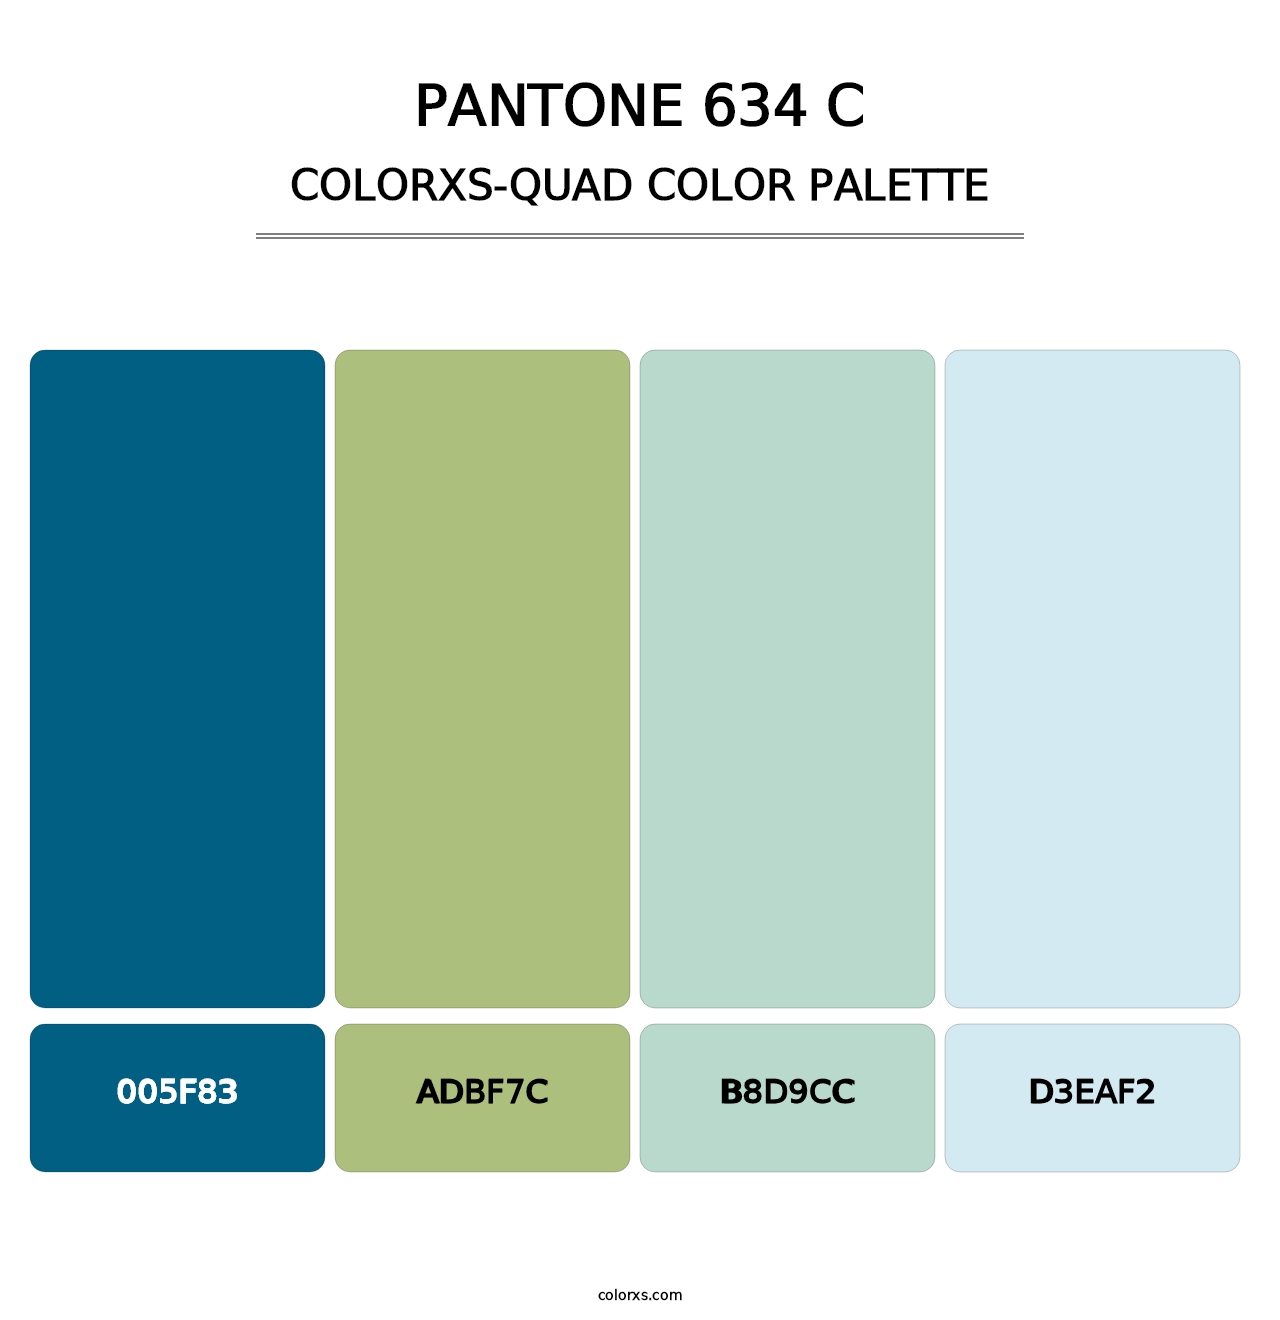 PANTONE 634 C - Colorxs Quad Palette